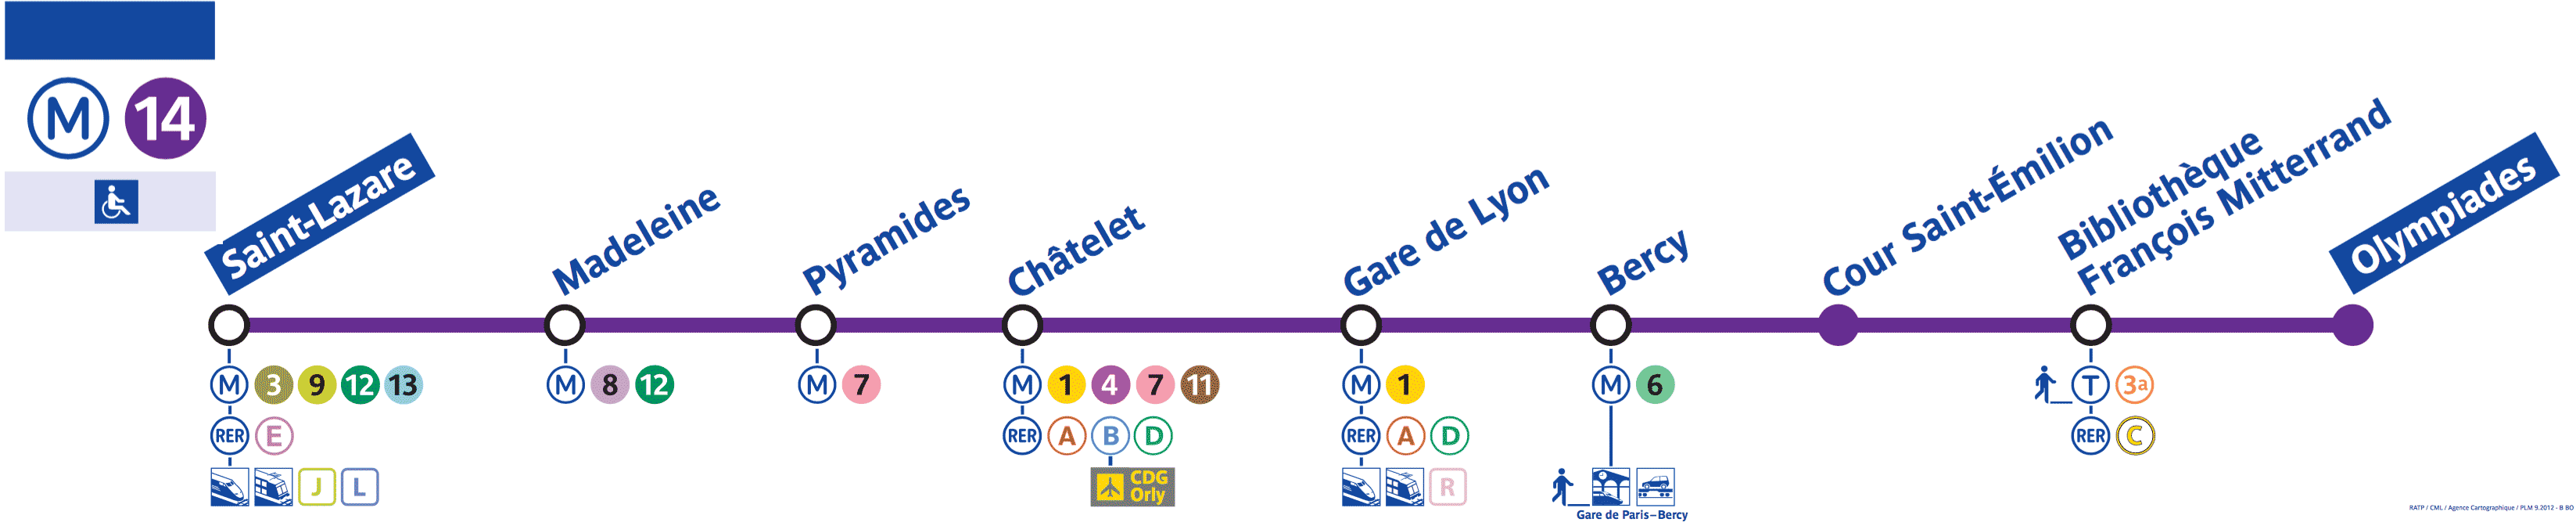 Paris Metro line 14 Map